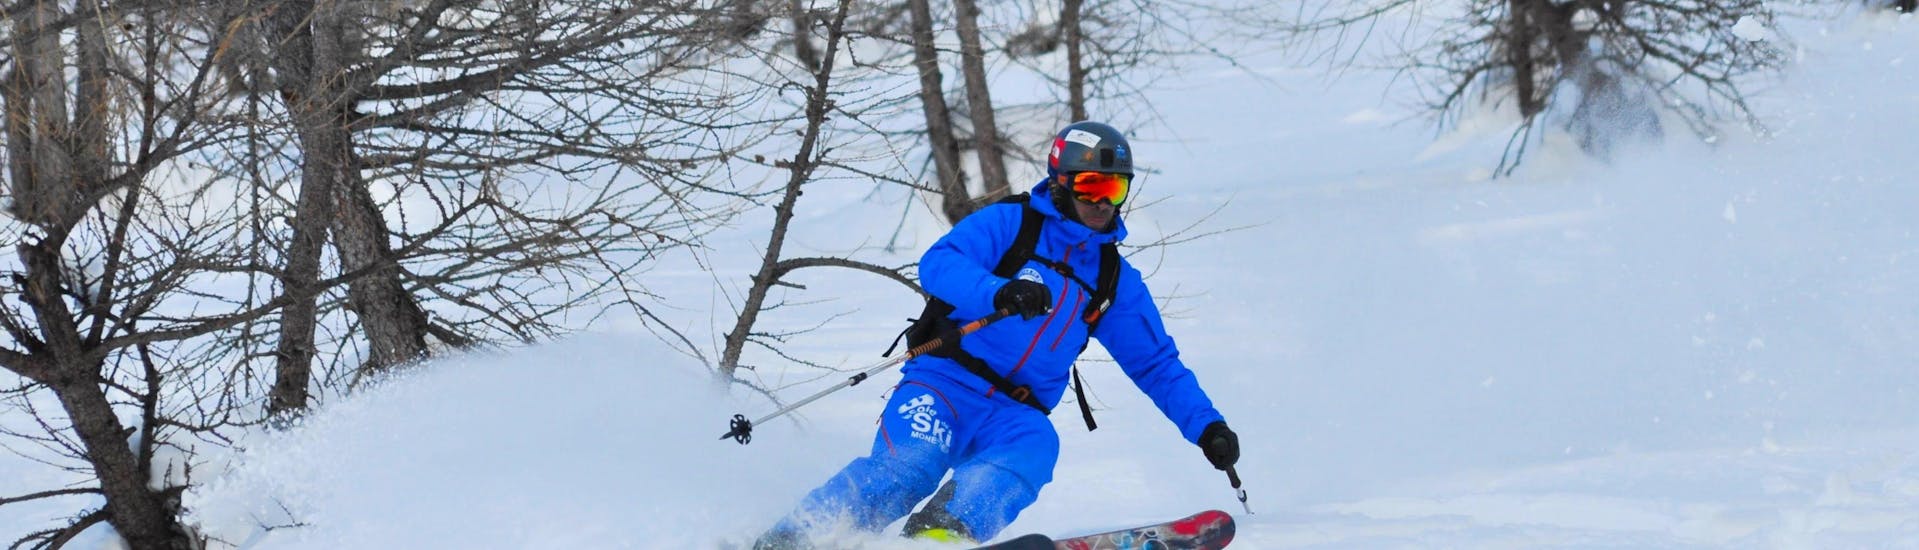 Cours de ski freeride (15-25 ans) pour Skieurs expérimentés.